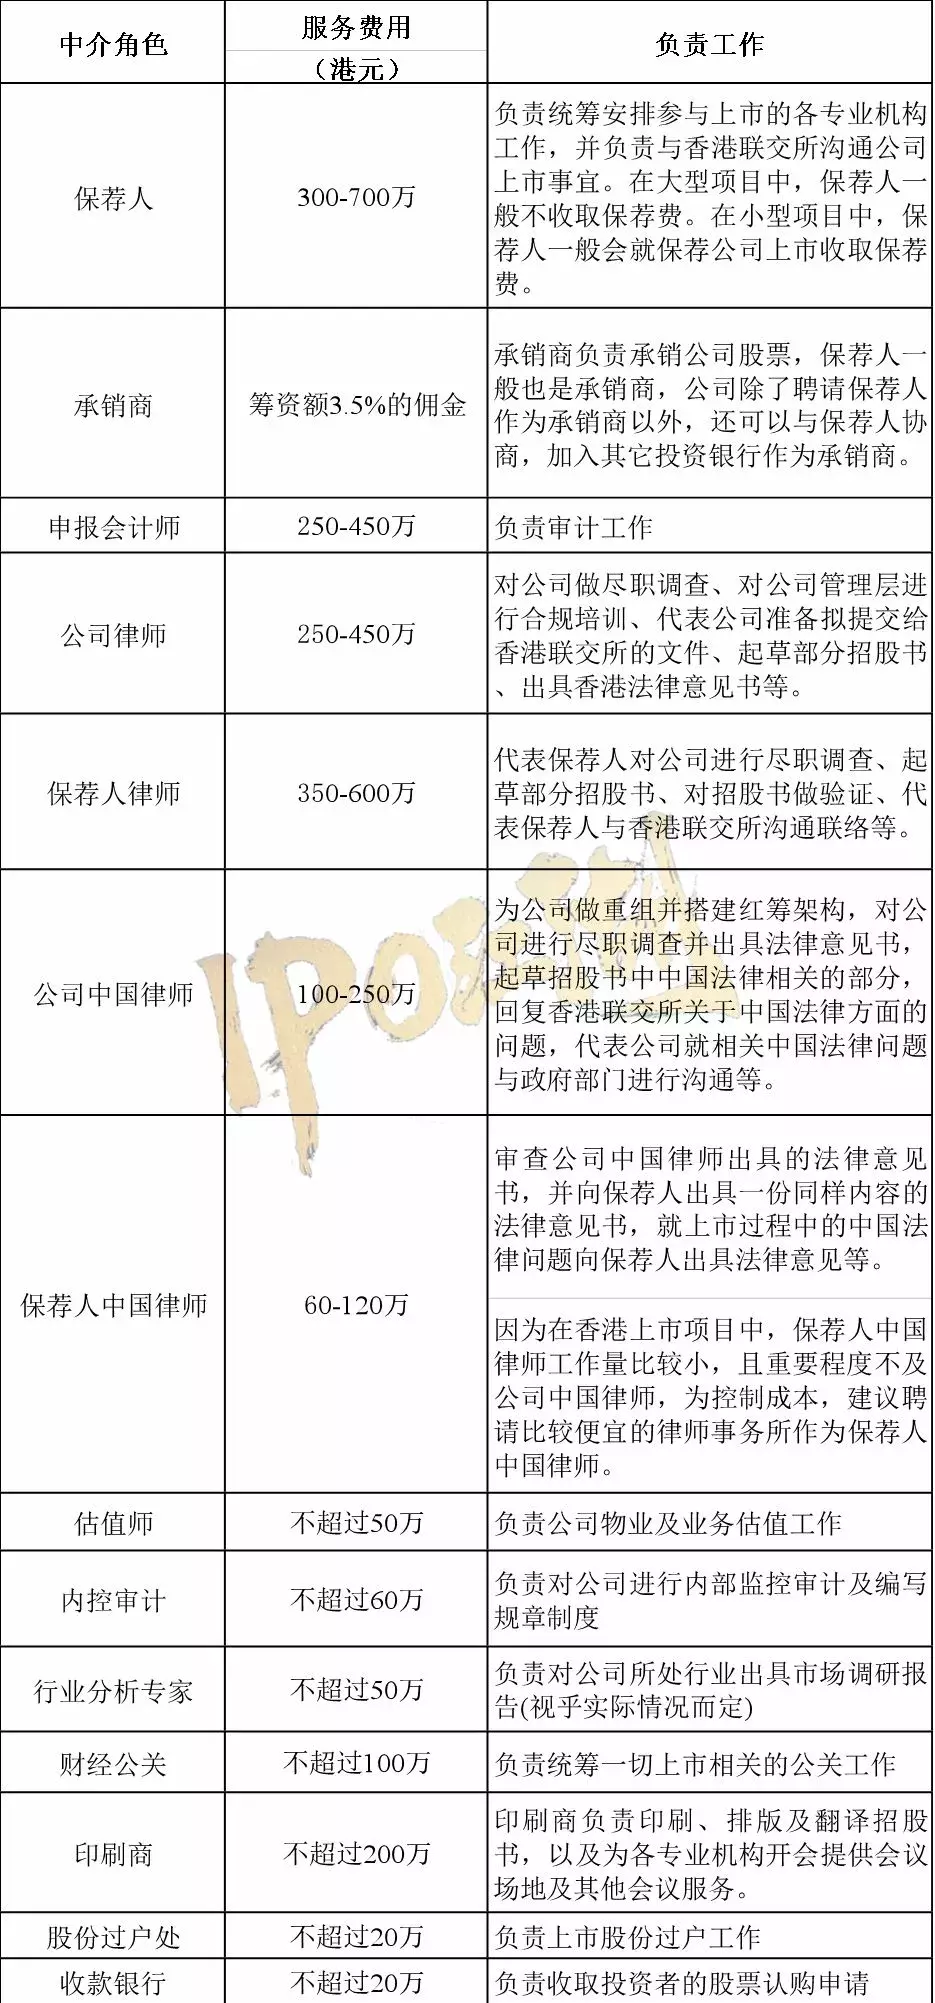 香港上市IPO详细流程及注意事项全解析